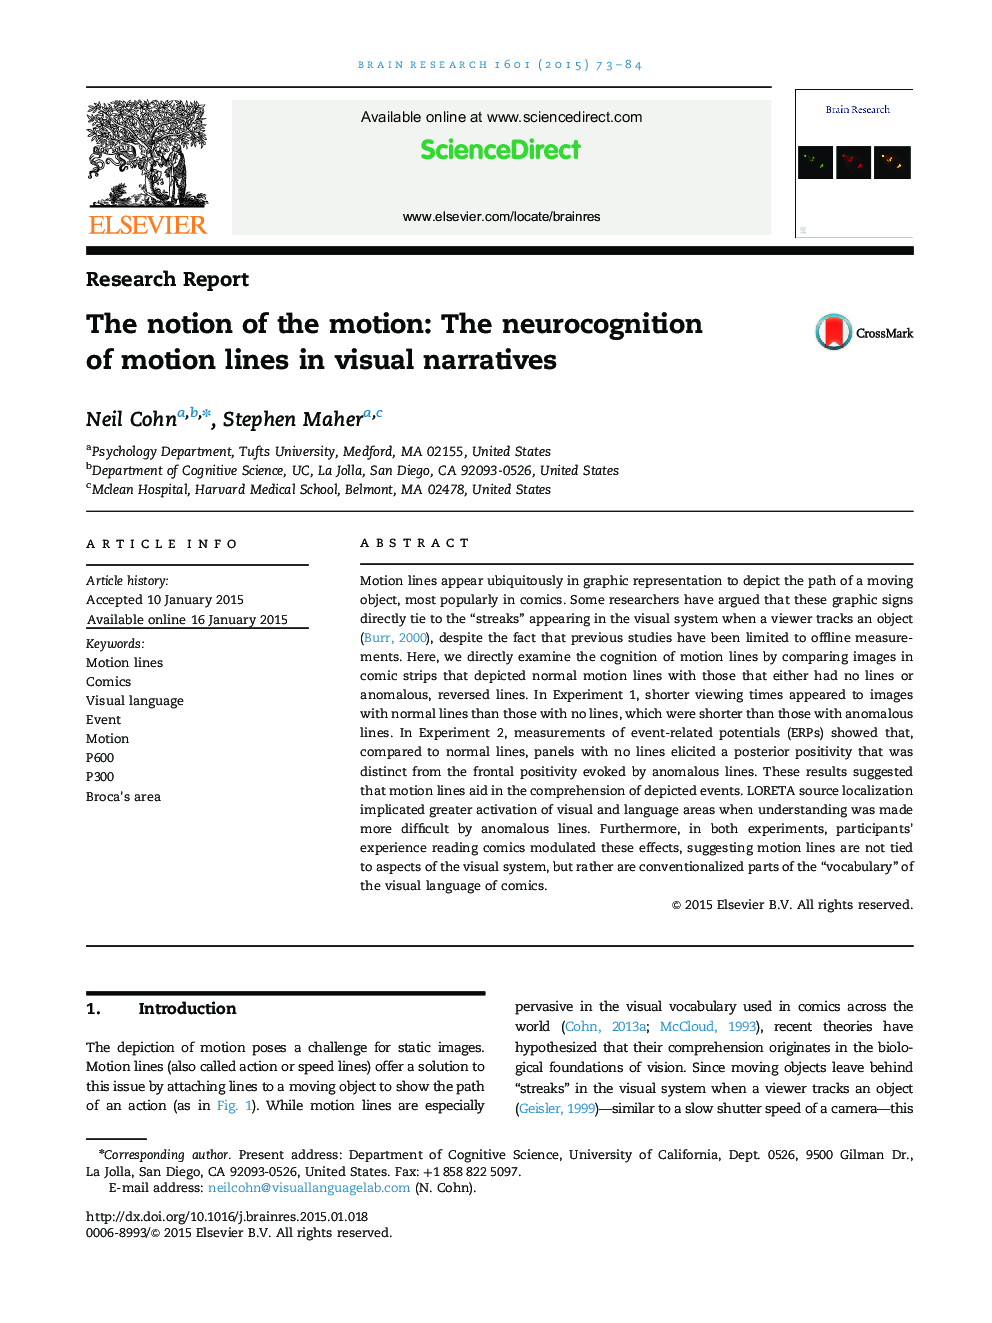 مفهوم حرکت: شناخت عصبی از خطوط حرکت در روایات بصری 